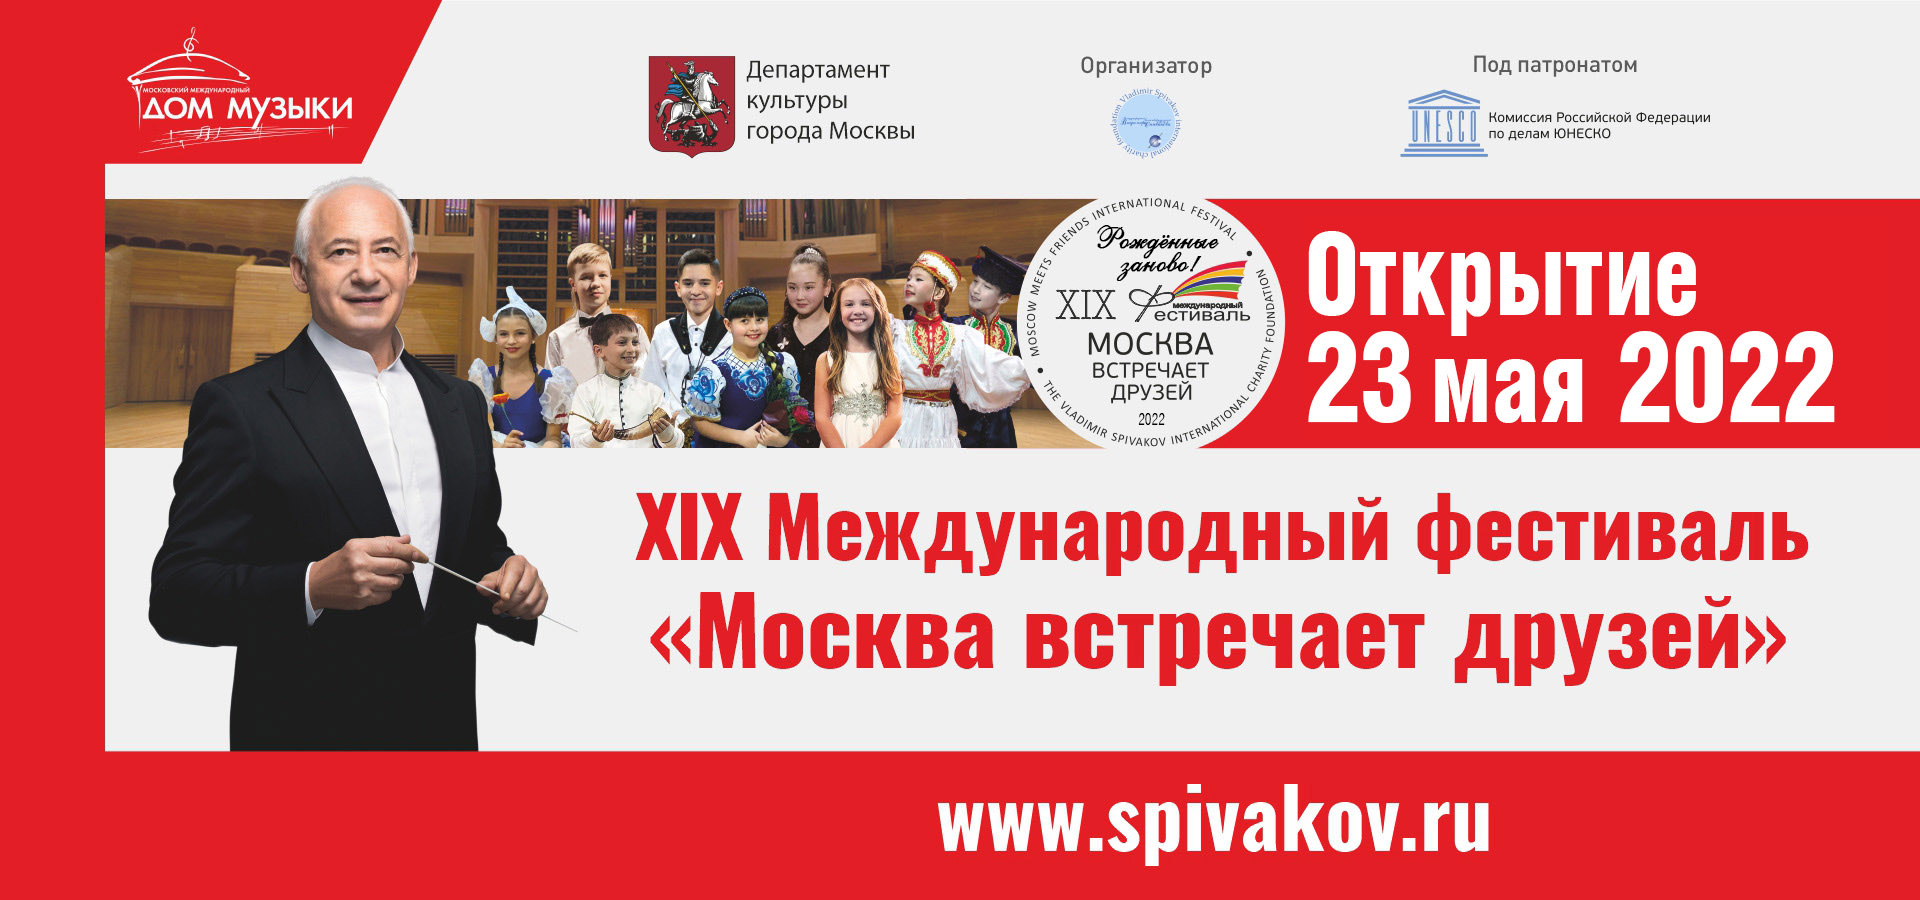 Международный фестиваль «Москва встречает друзей»